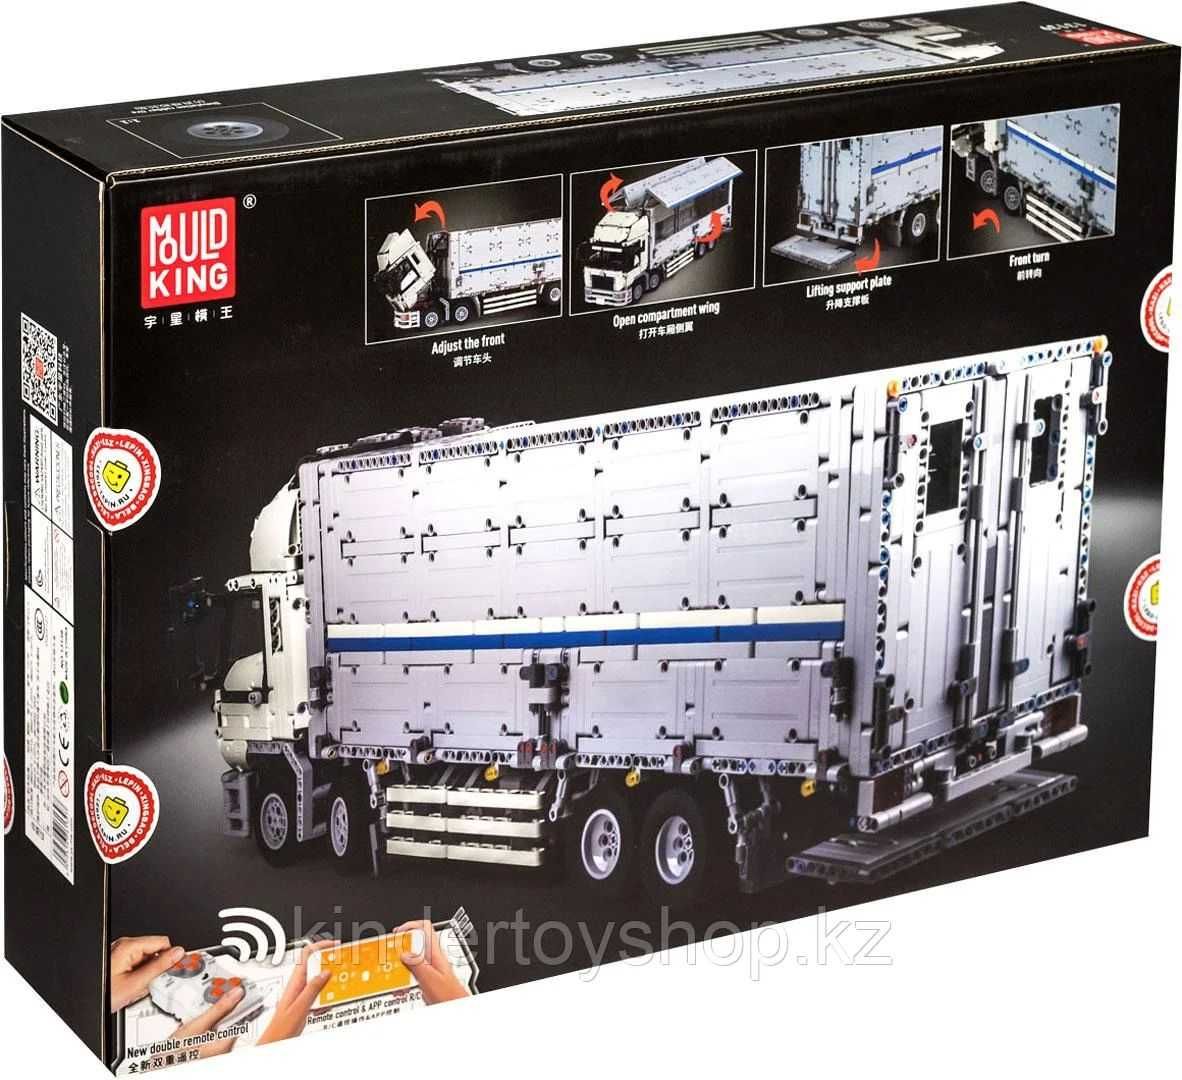 Конструктор MOC-1389 Mould King 13139 Wing Body Truck грузовик фура